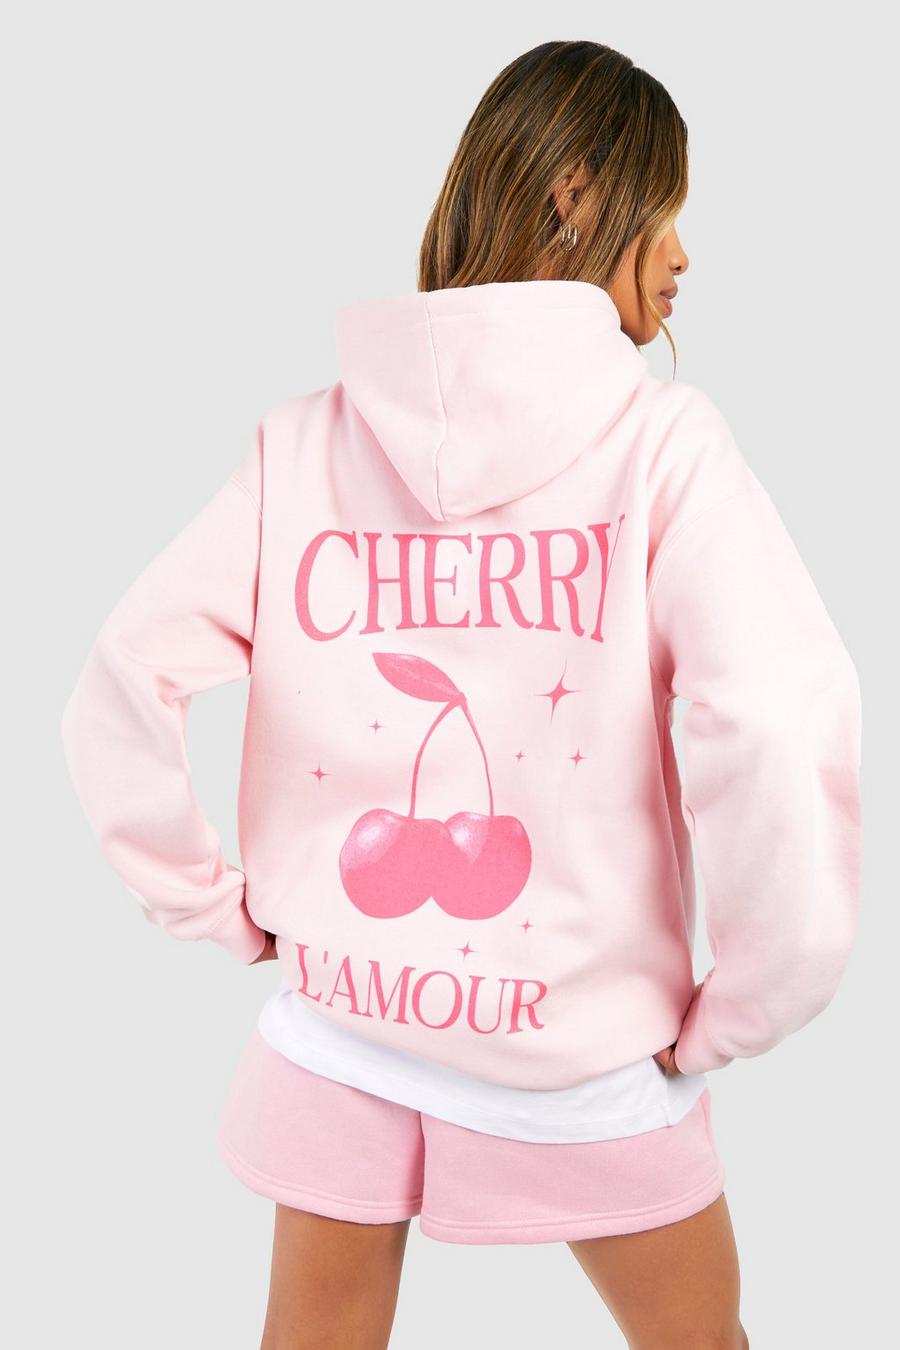 Sudadera oversize con capucha y estampado Cherry L'amour en la espalda, Light pink